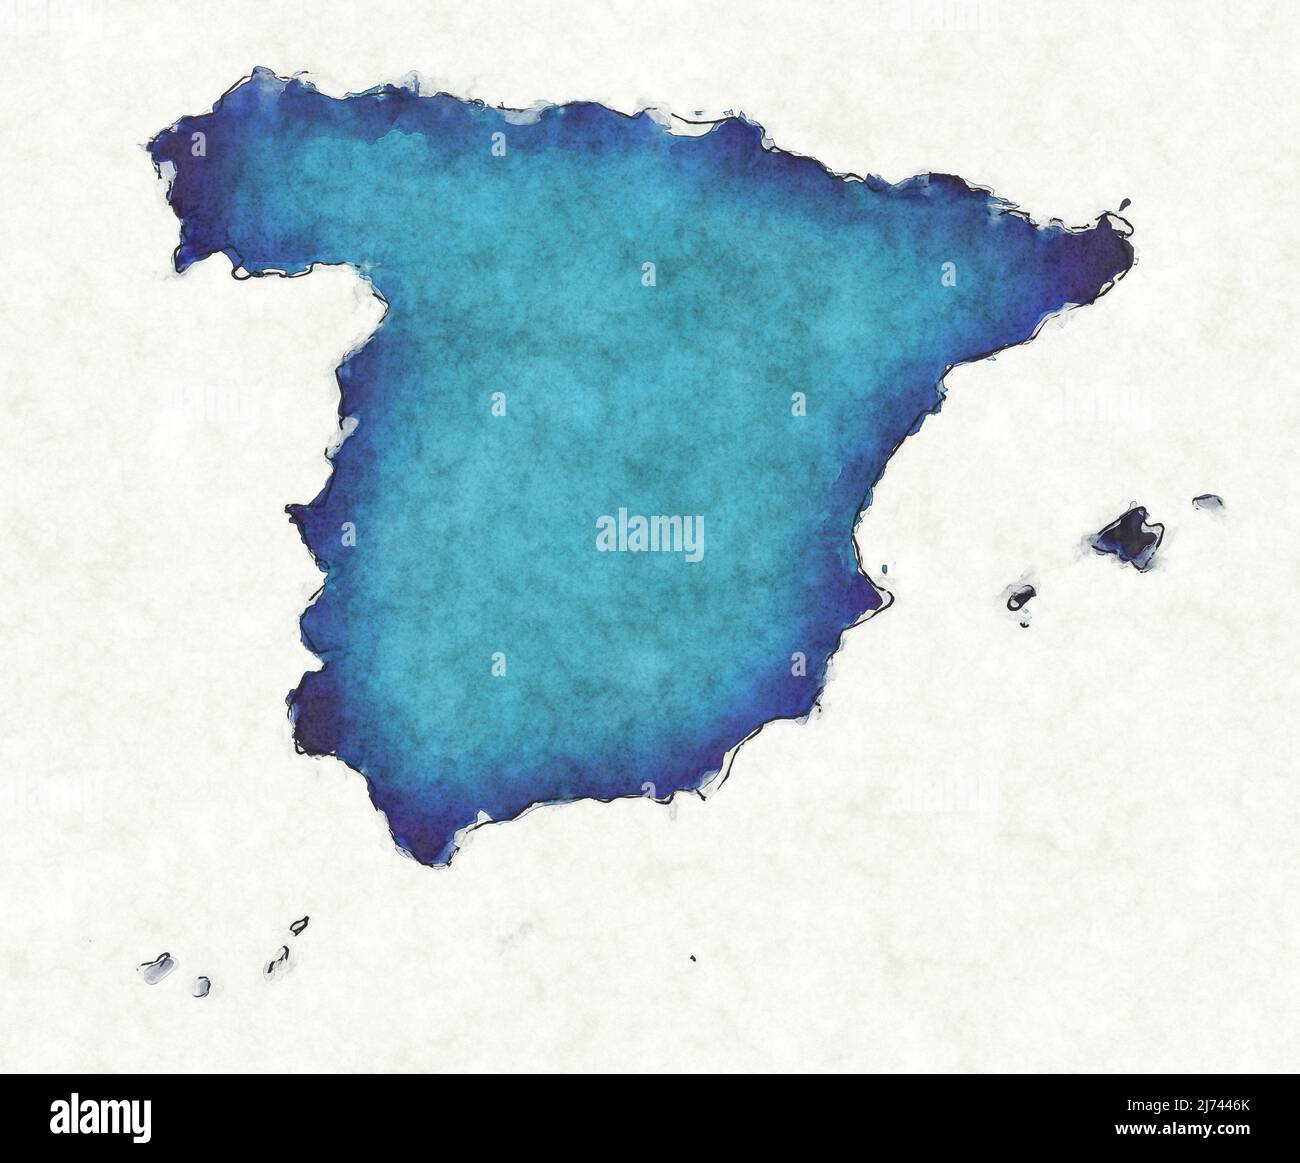 Mapa de España con líneas trazadas e ilustración de acuarela azul Foto de stock